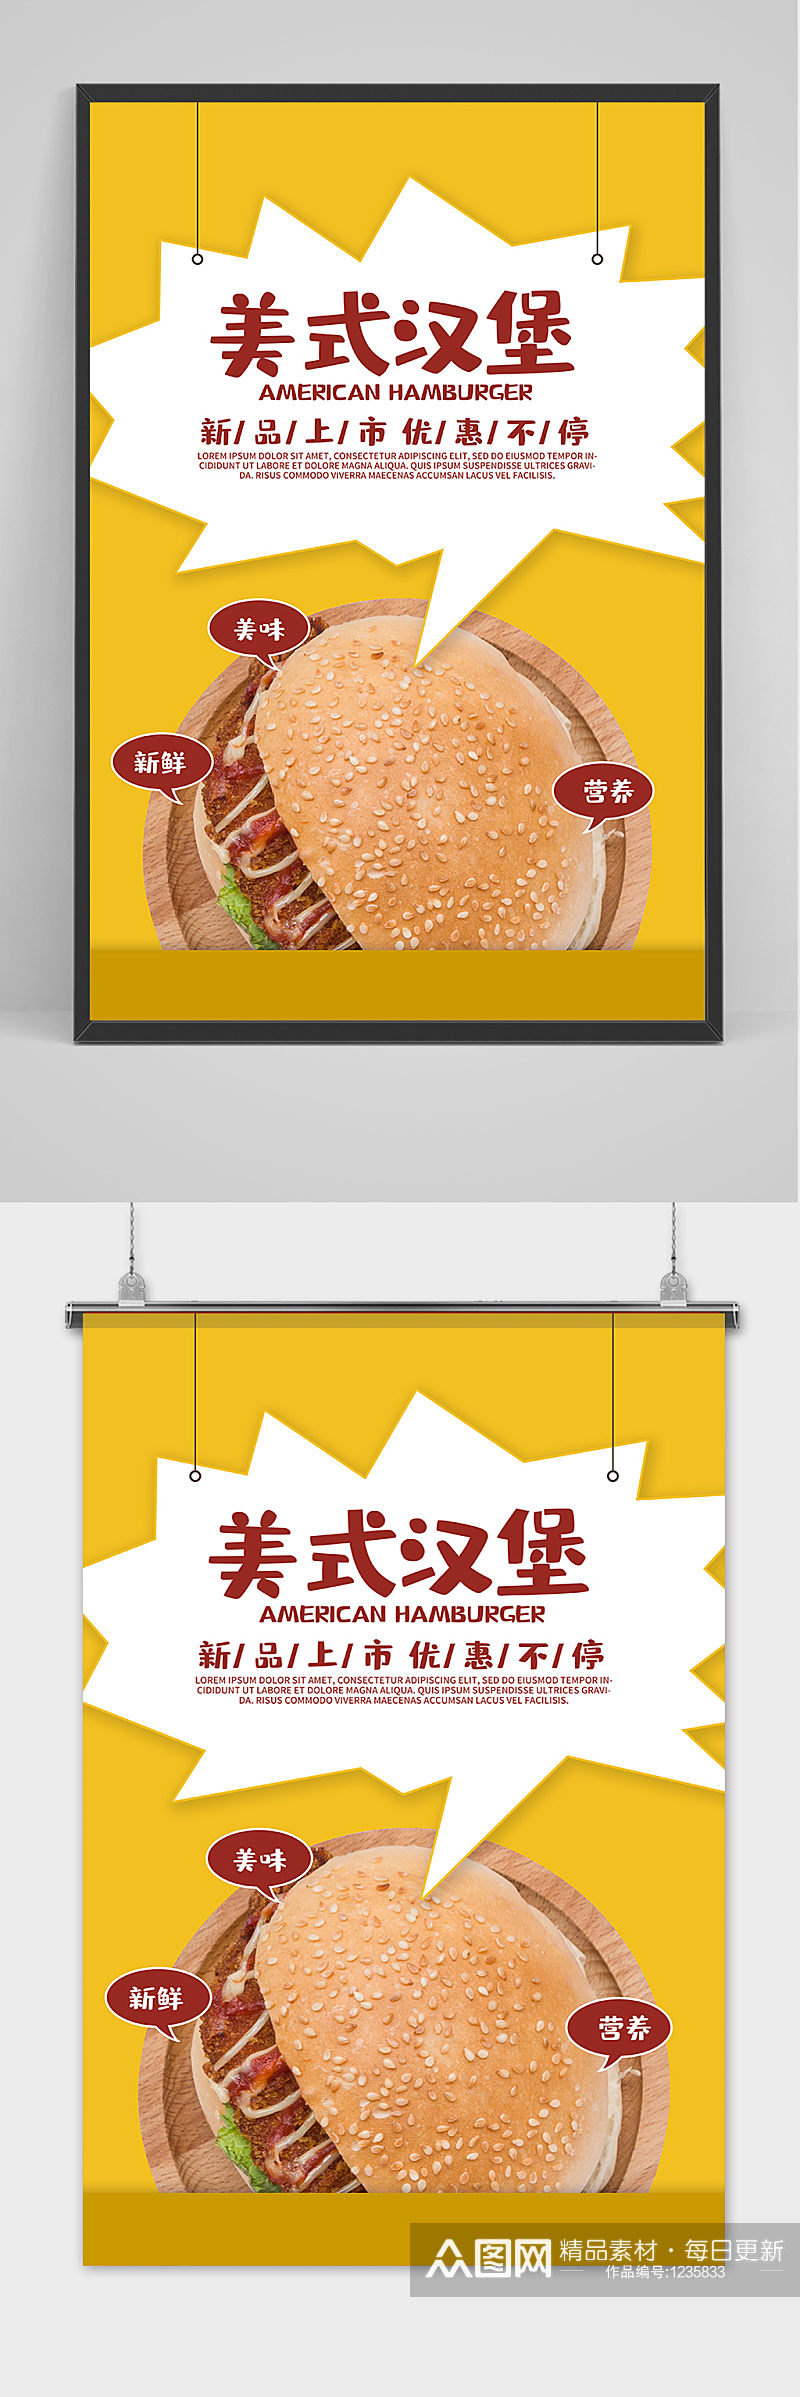 简约美式汉堡宣传海报素材